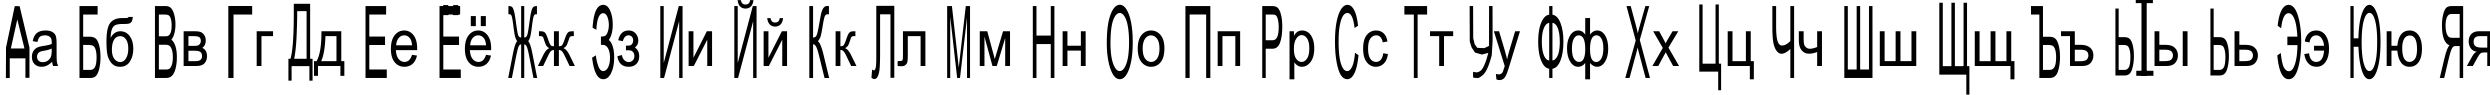 Пример написания русского алфавита шрифтом Julia Special Font H